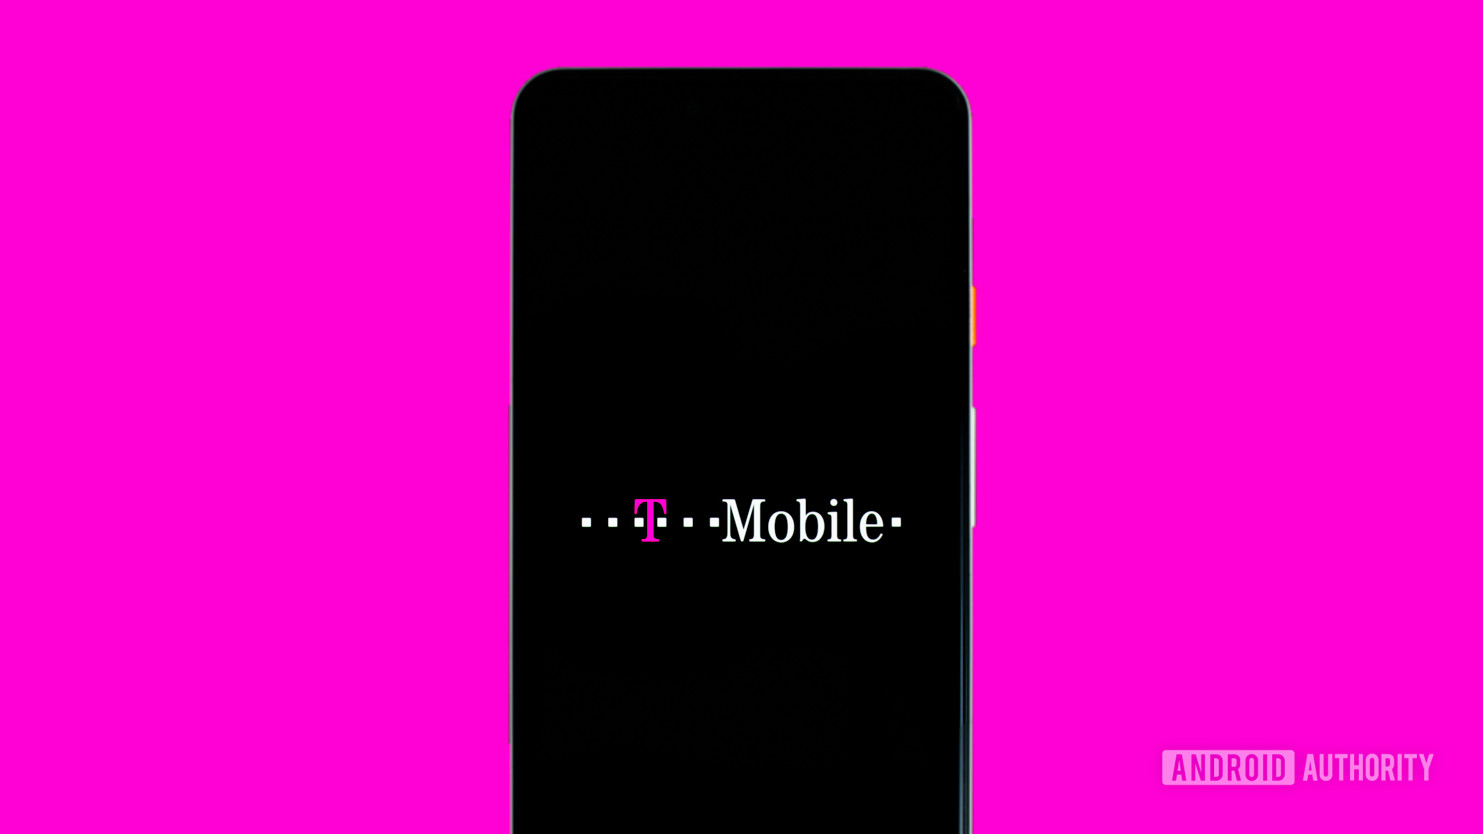 Desbloquee un teléfono T-Mobile Samsung antes de tiempo con este error